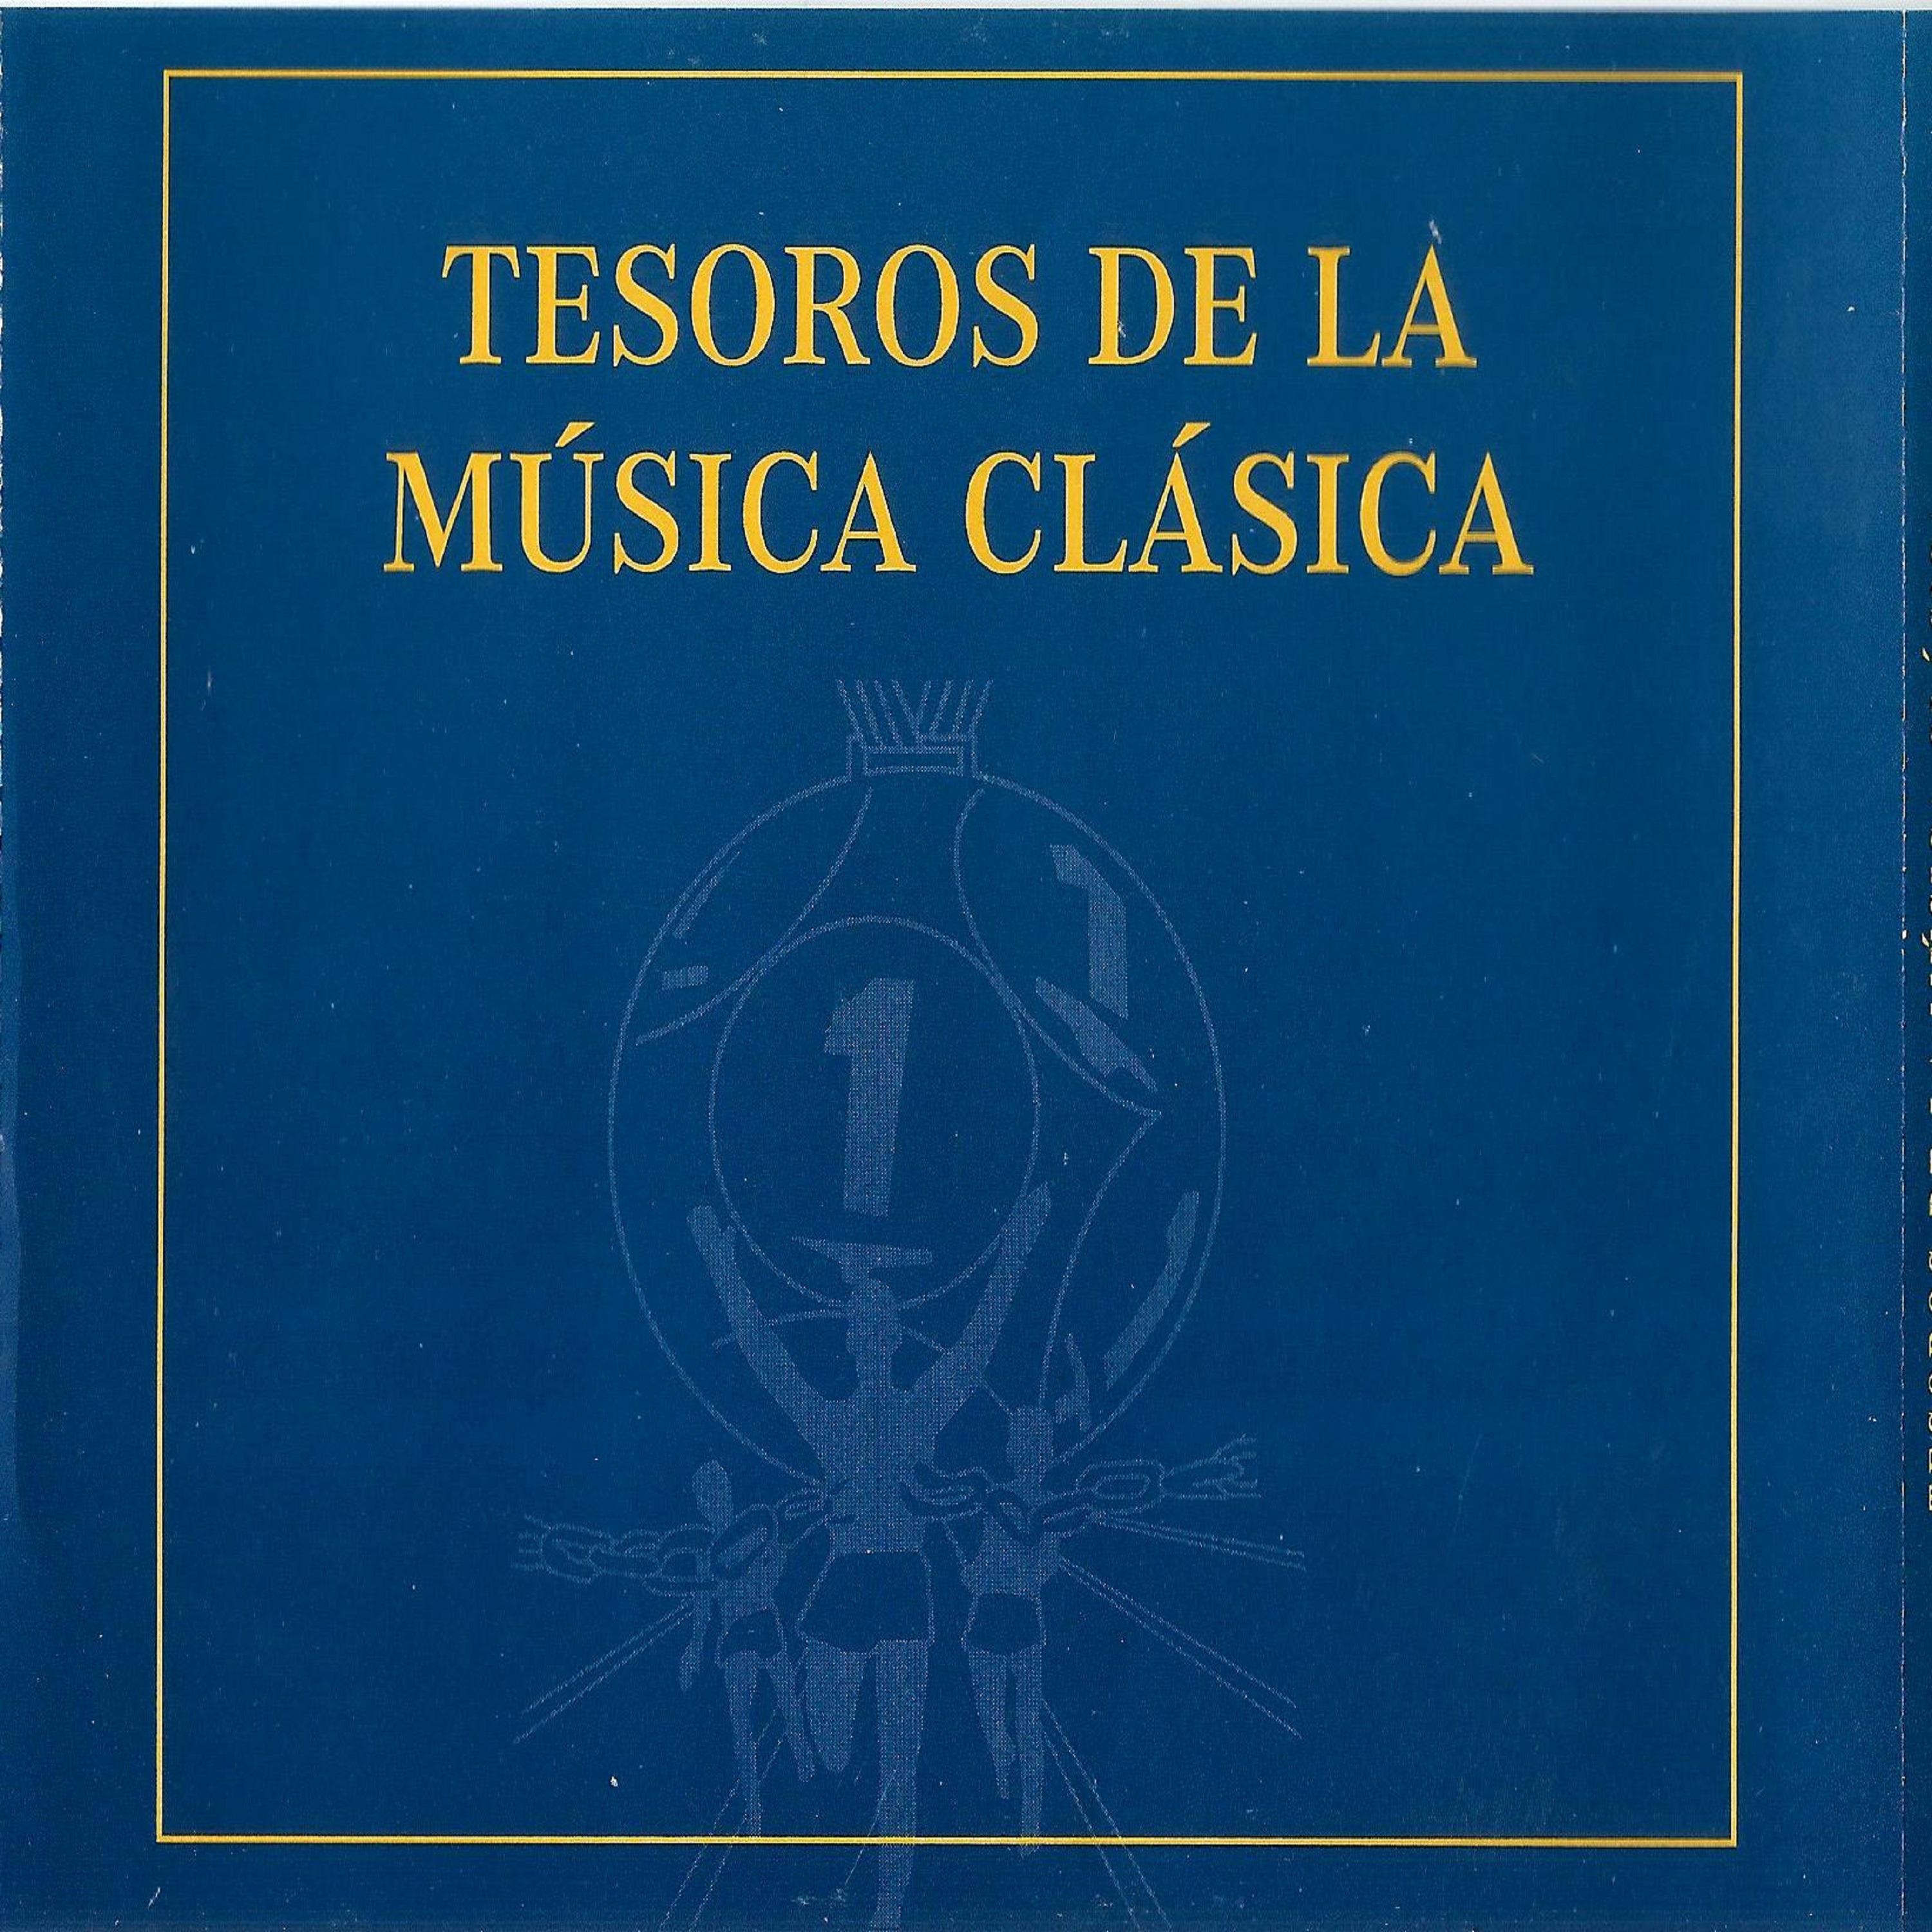 Tesoros de la Música Clásica专辑